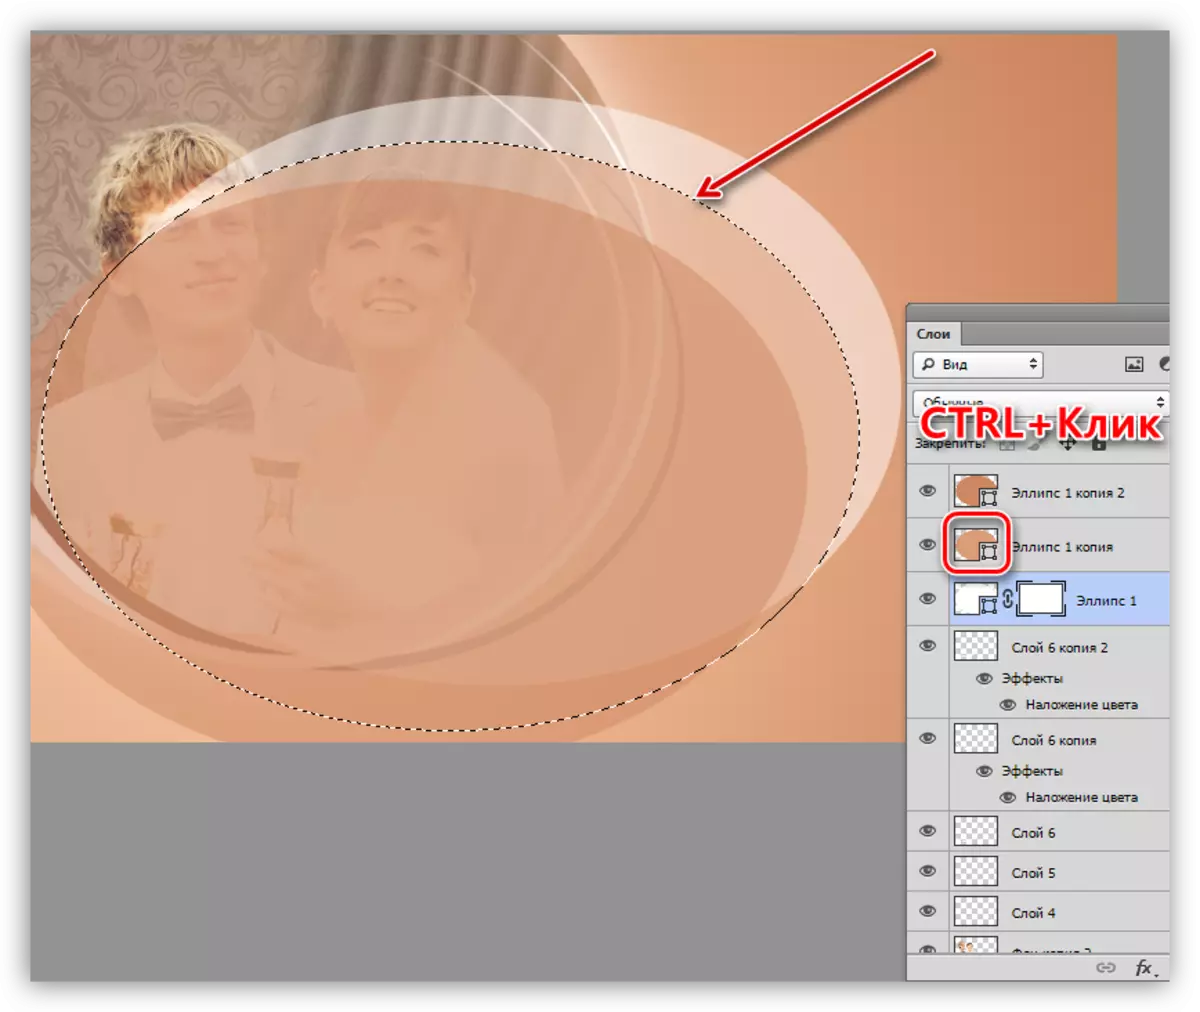 Photoshop- ում լուսանկարները զարդարելիս, Photoshop- ում լուսանկարներ զարդարելիս դեկոր ստեղծելու համար դեկոր ստեղծելու համար